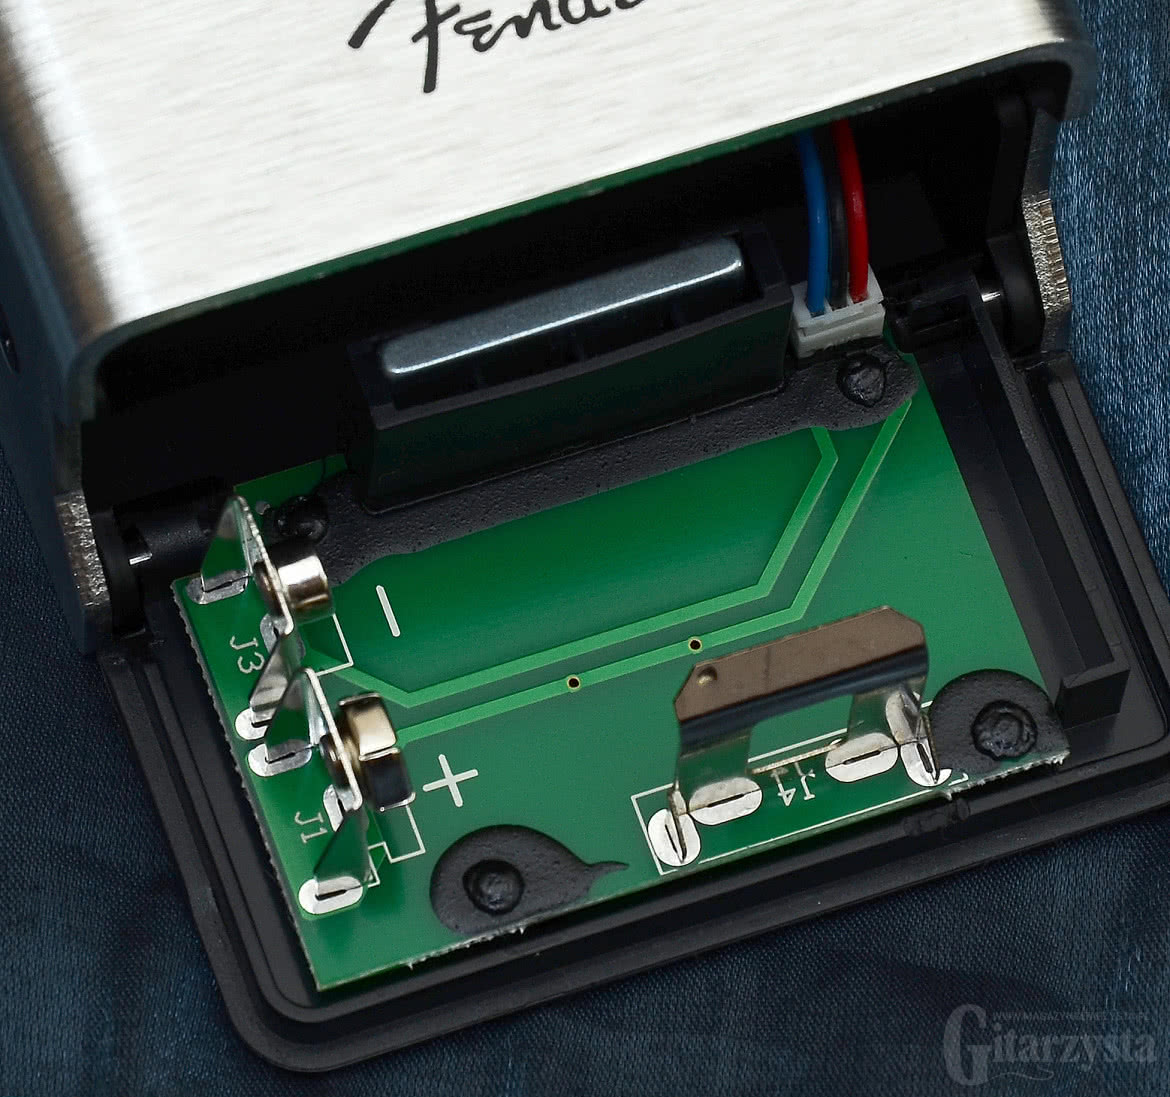 Magnetyczna klapka baterii to już znak firmowy nowej serii stompboxów Fendera.